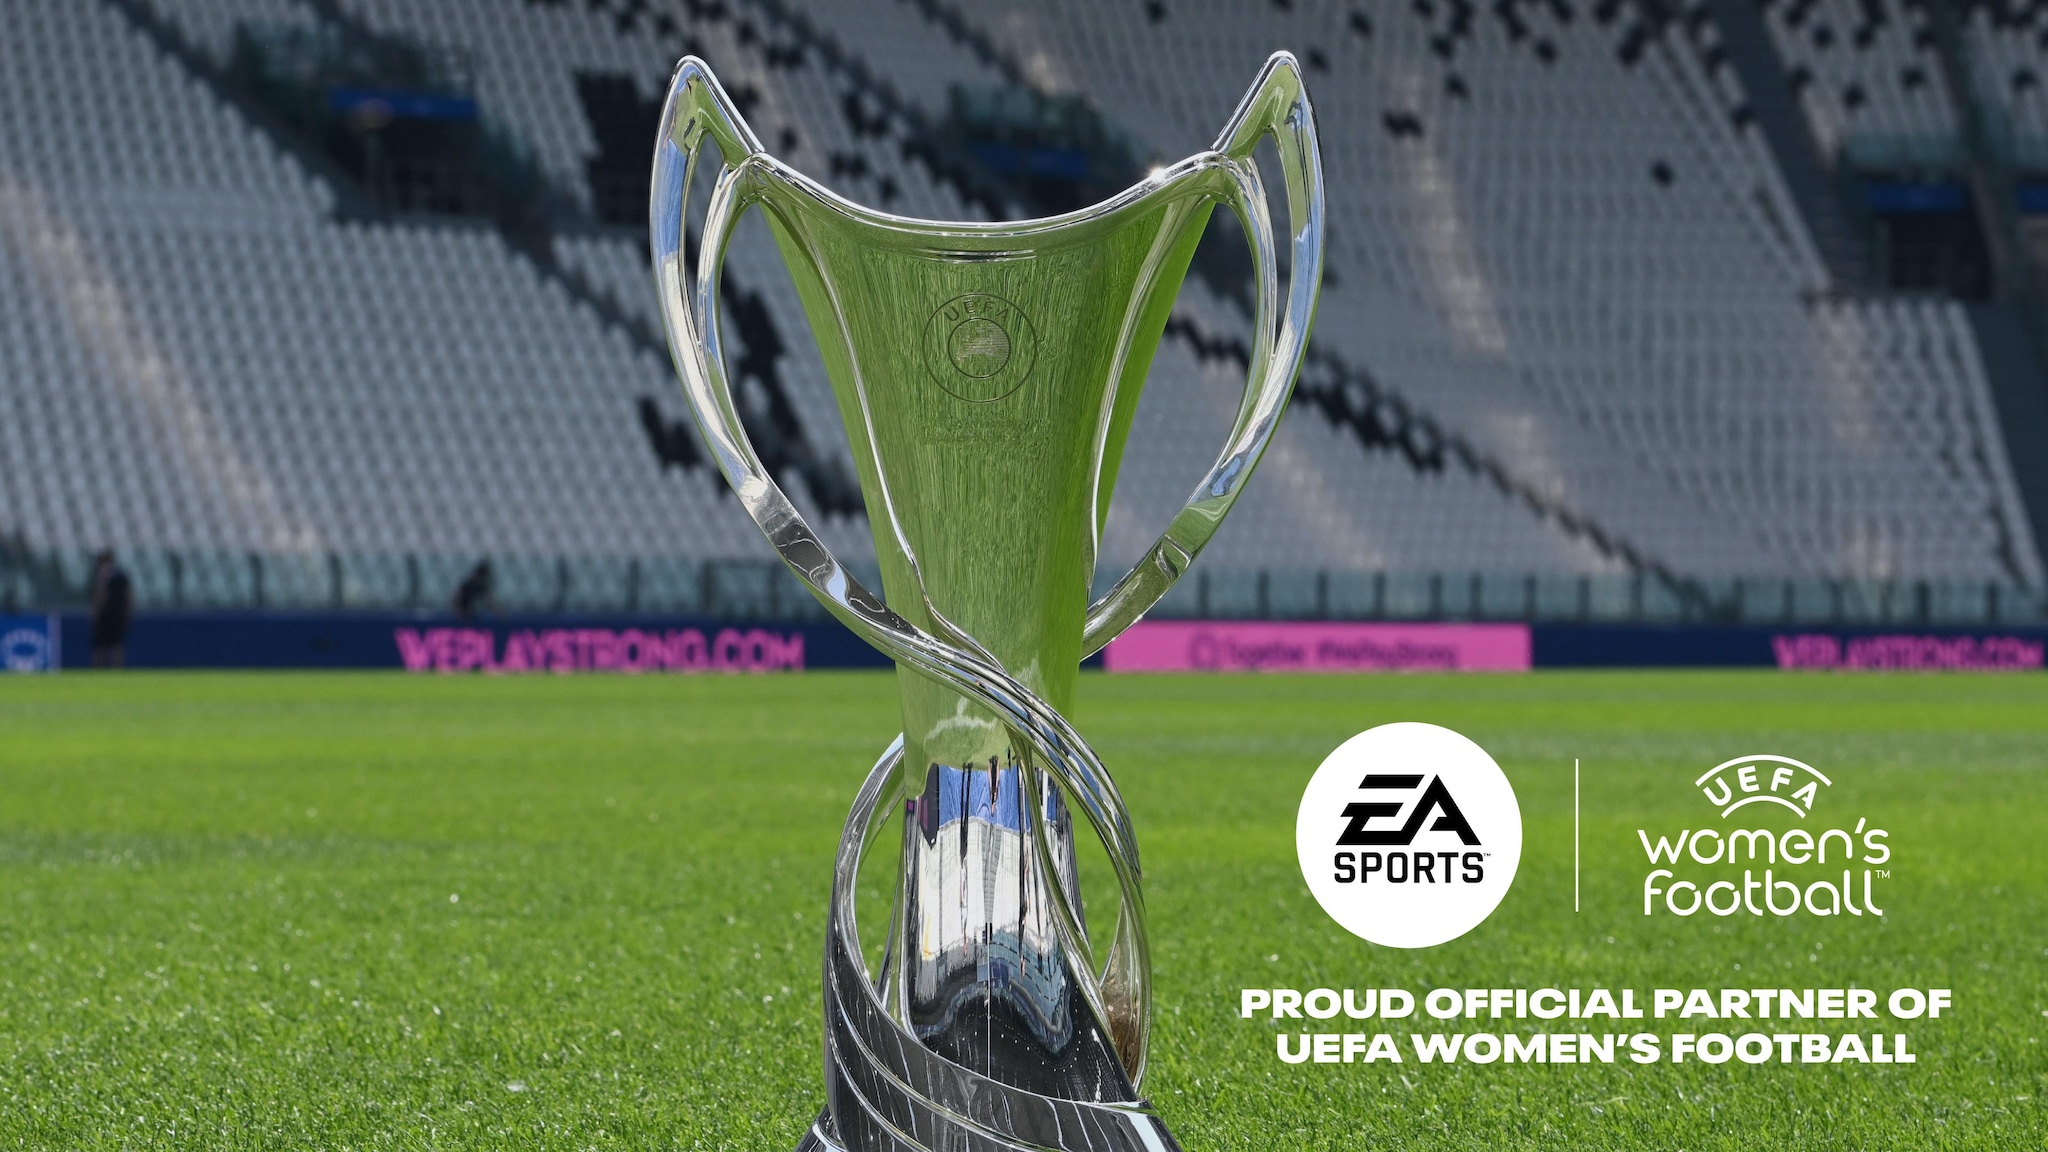 EA SPORTS diventa partner della UEFA per il calcio femminile | La UEFA |  UEFA.com